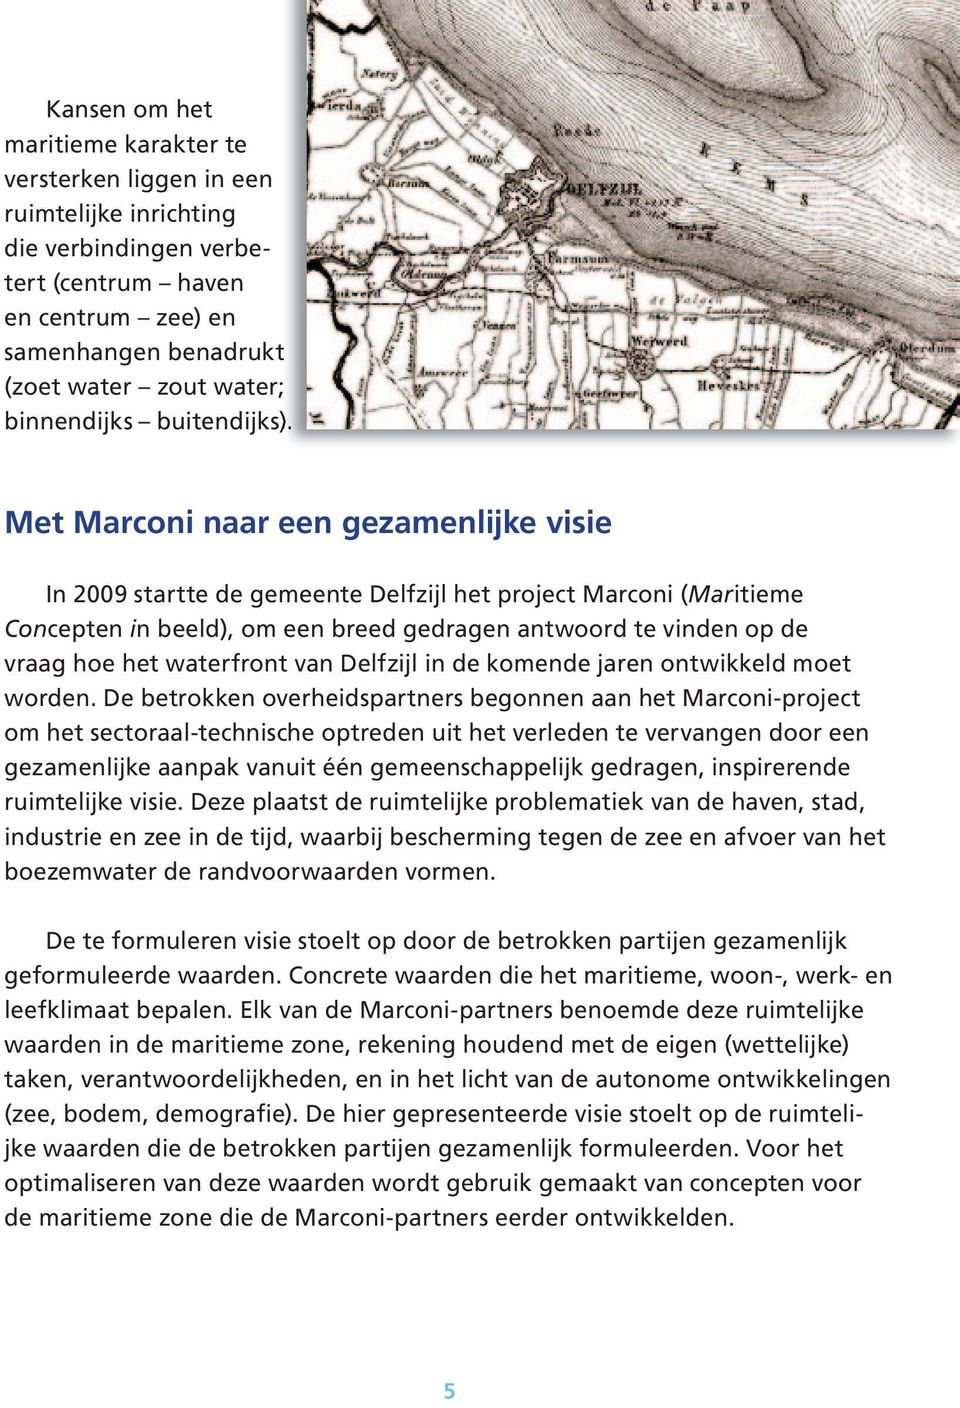 Met Marconi naar een gezamenlijke visie In 2009 startte de gemeente Delfzijl het project Marconi (Maritieme Concepten in beeld), om een breed gedragen antwoord te vinden op de vraag hoe het